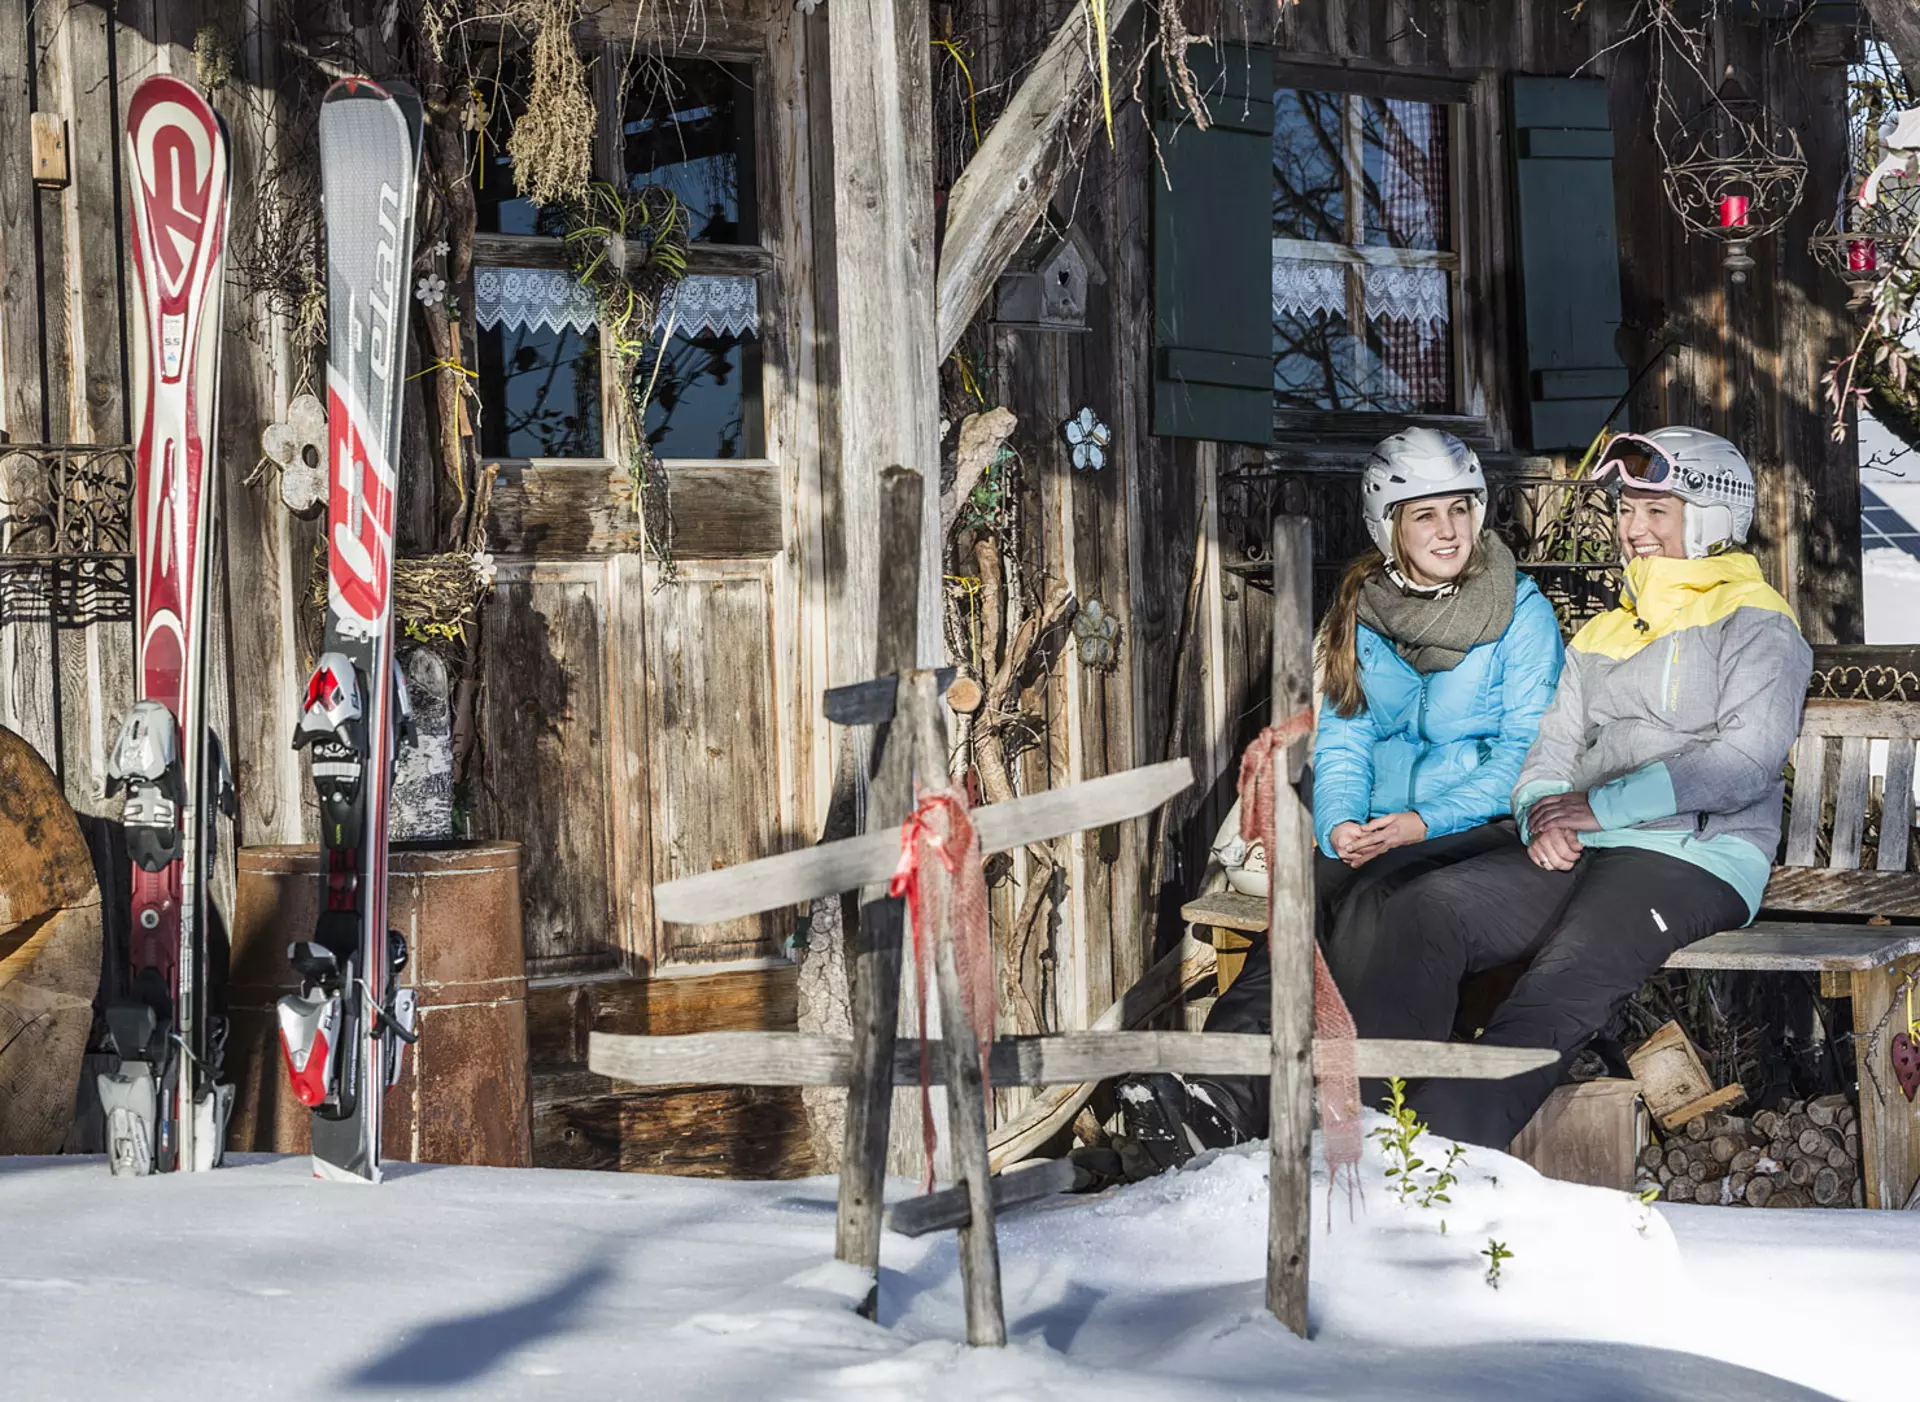 Winterurlaub in der Alm- und Berghütte: Apres Ski nach dem Skifahren